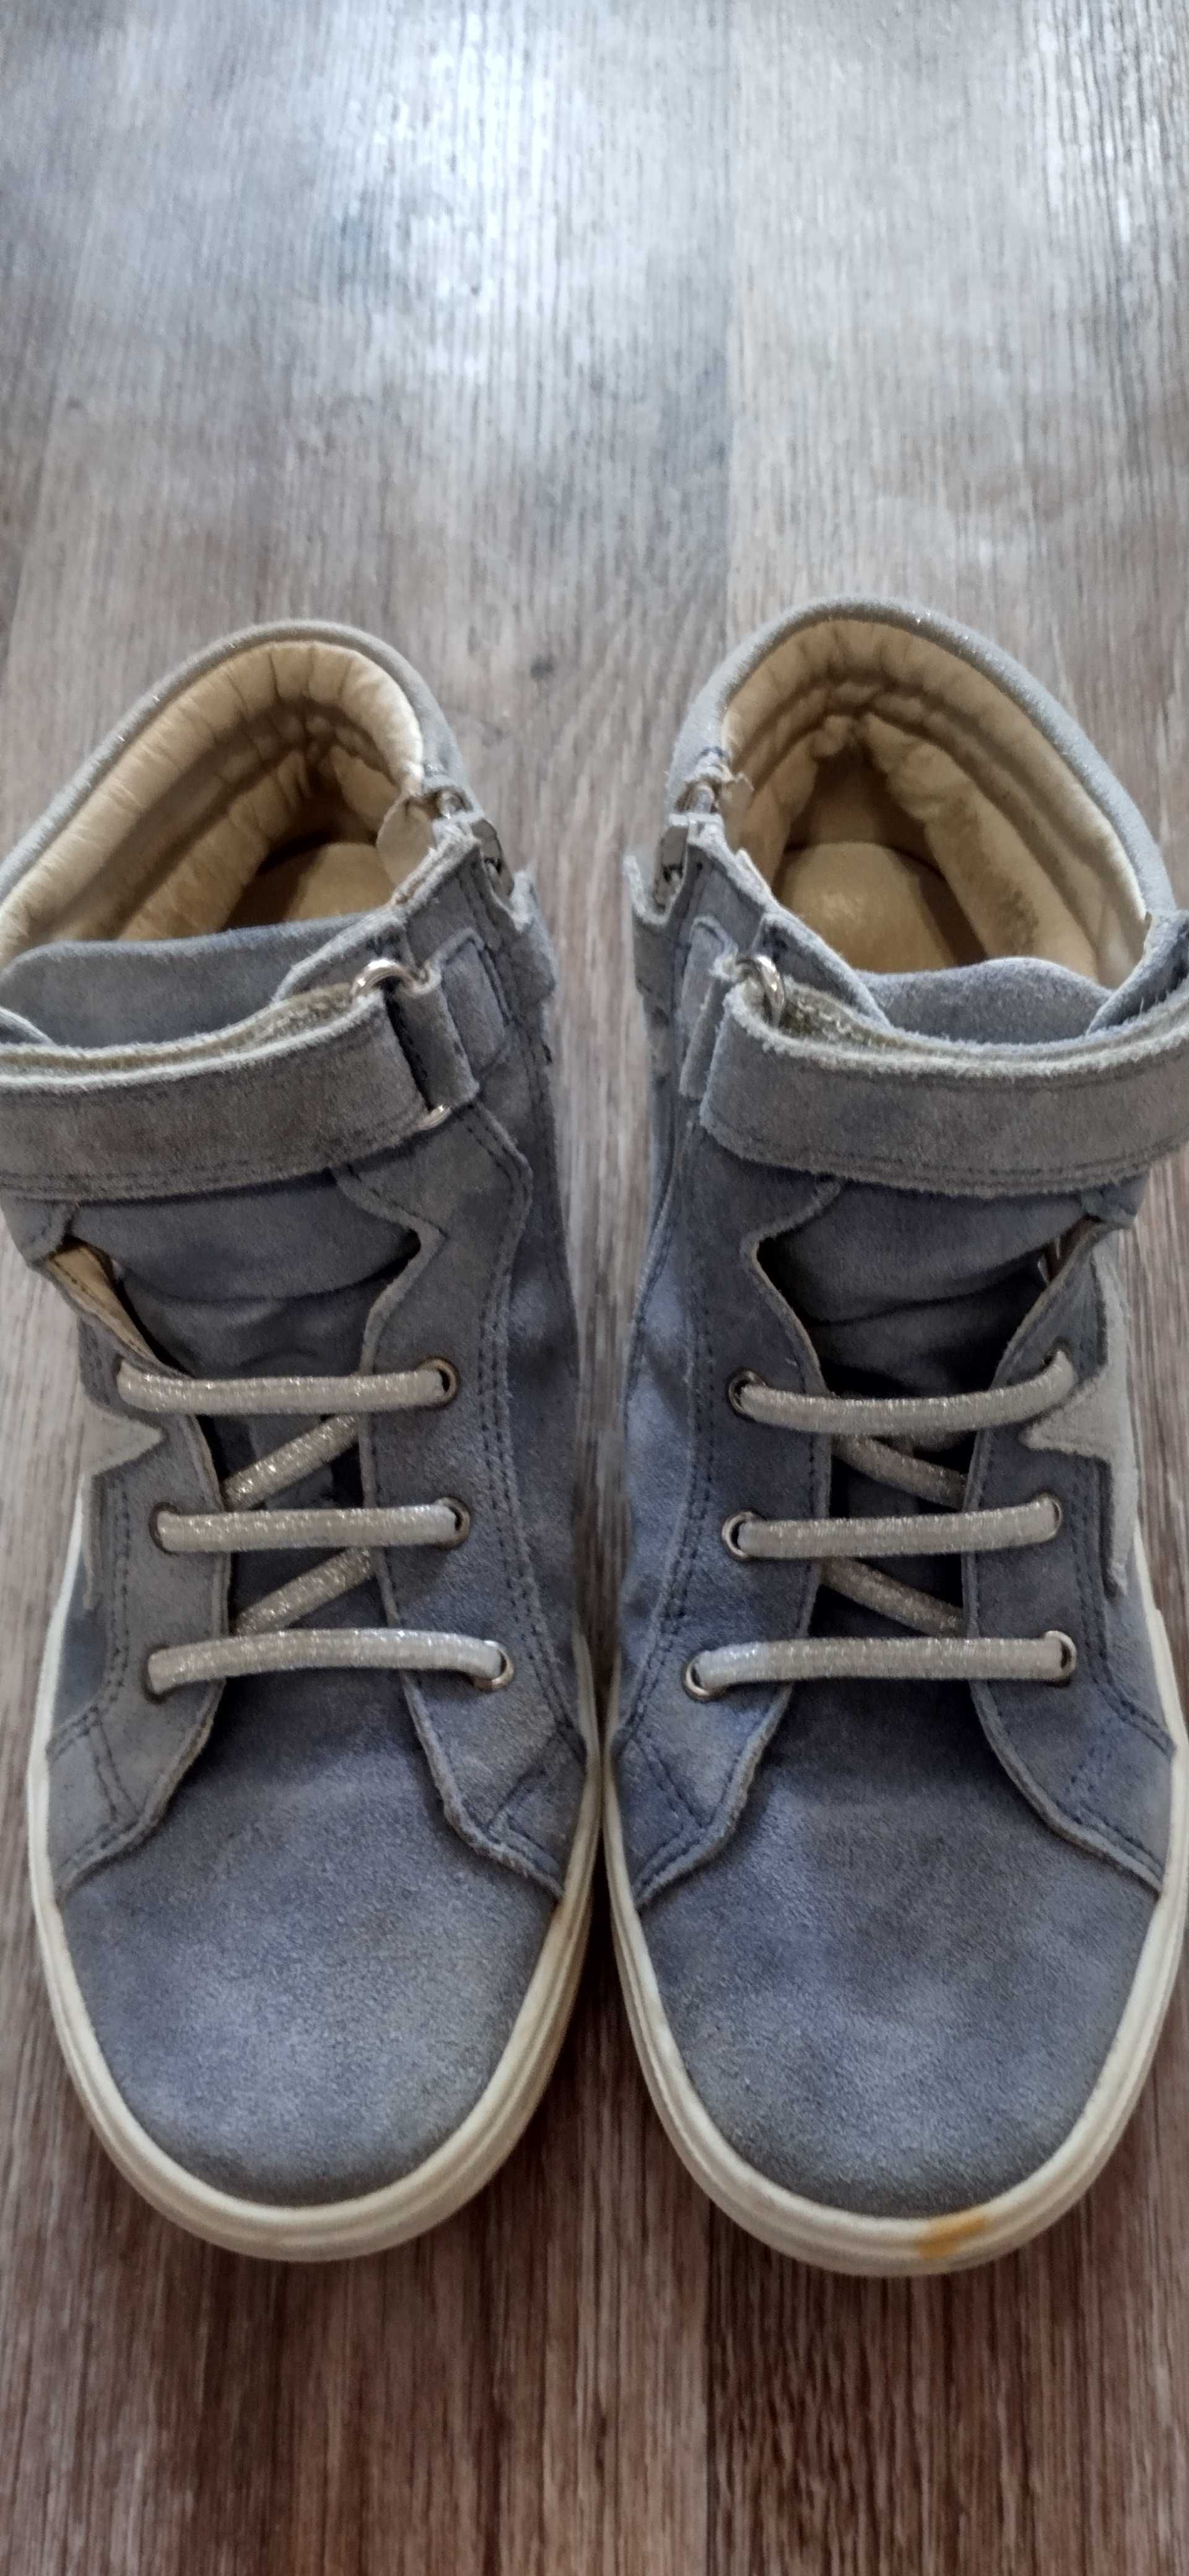 Обувь.Кроссовки,кеды,туфли,босоножки по стельке 21-21.5 см